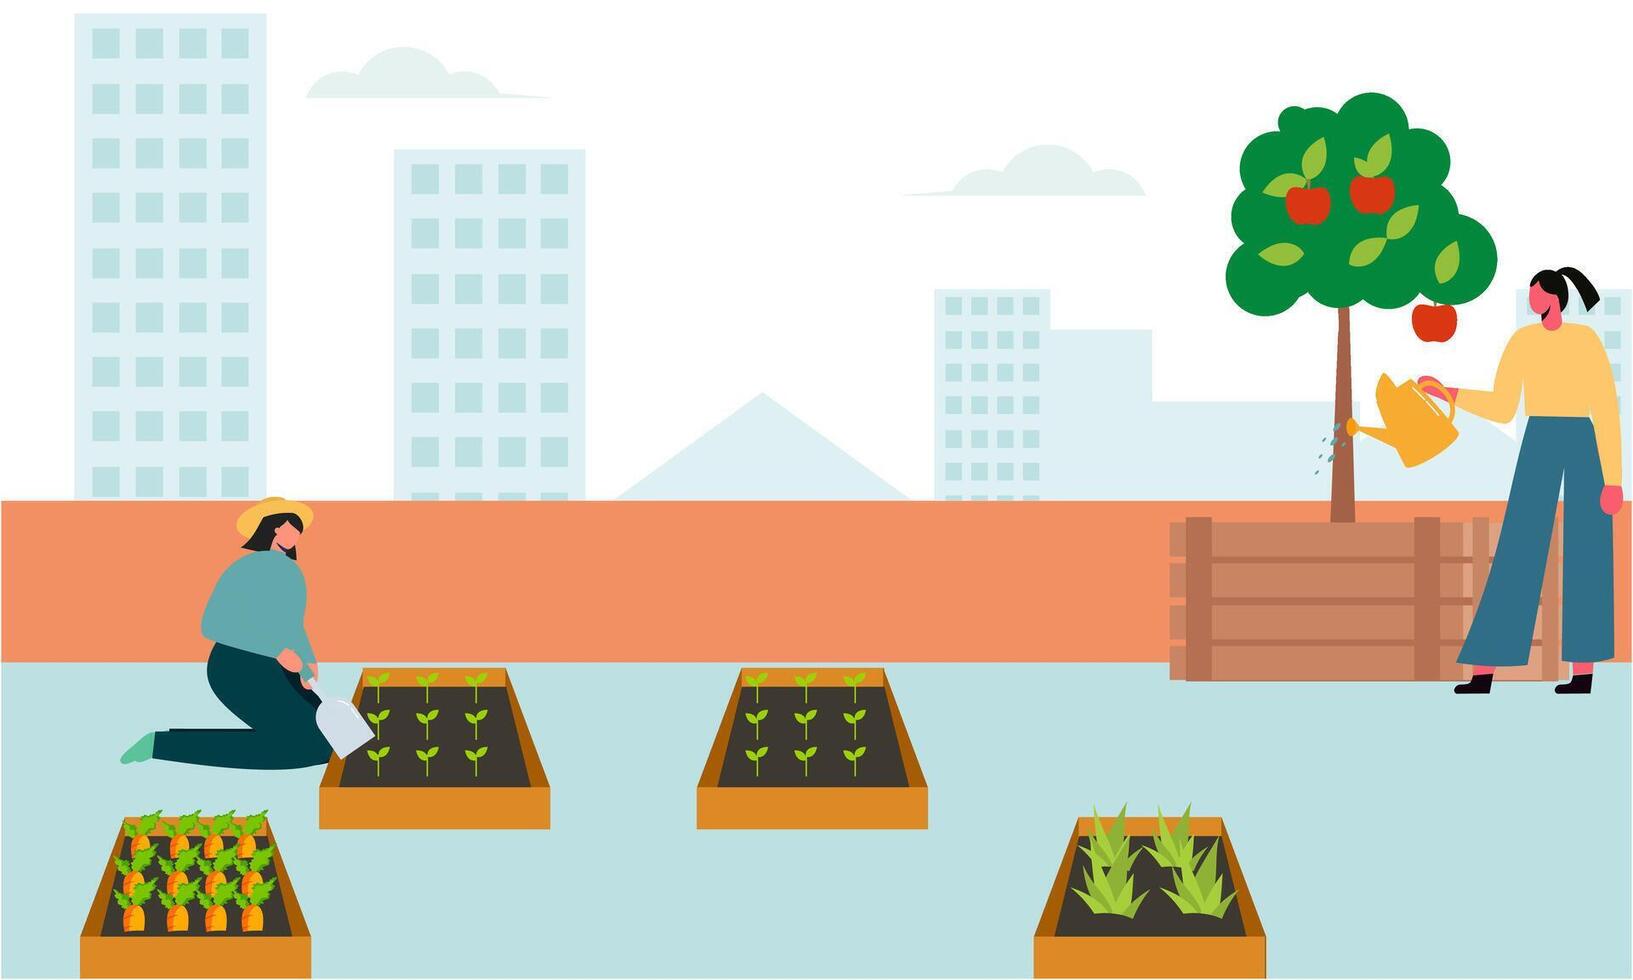 människor trädgårdsmästare jordbrukare tillsammans arrangemang grön tak illustration vektor